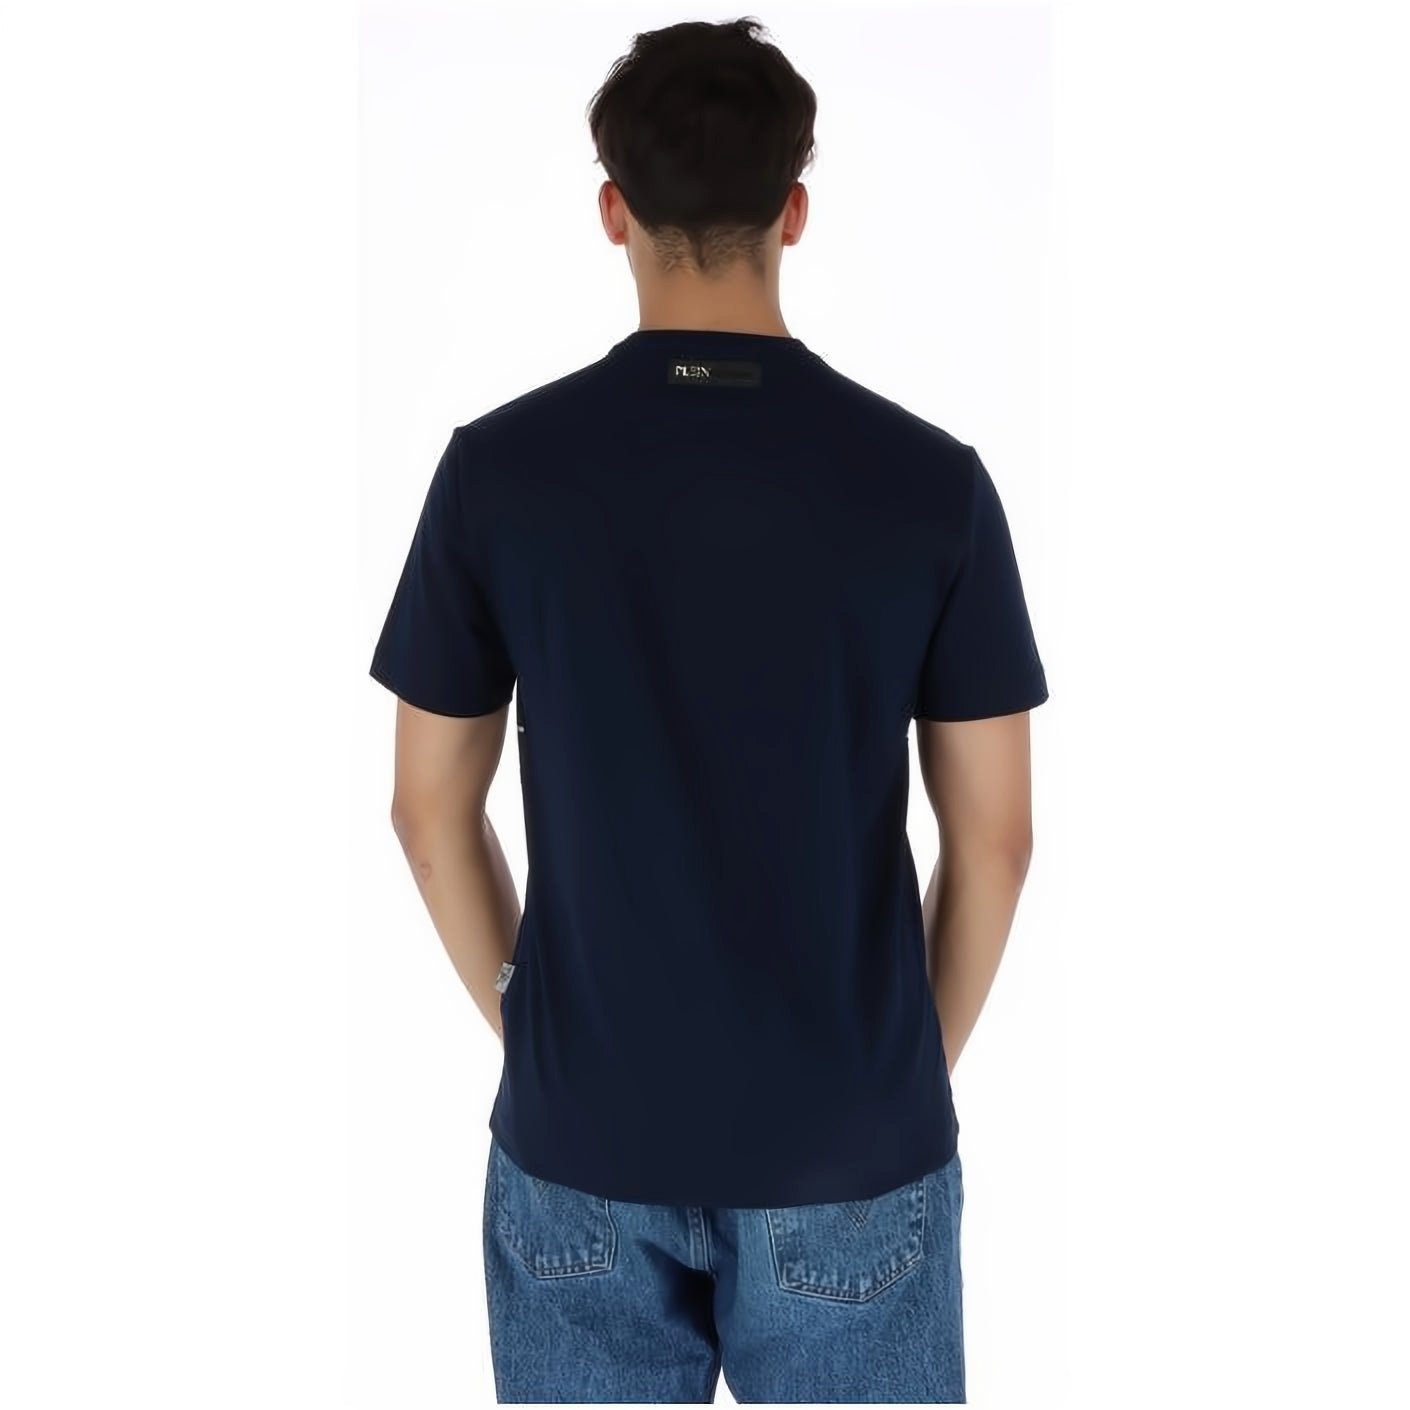 T-Shirt NECK vielfältige Farbauswahl Stylischer hoher ROUND PLEIN SPORT Look, Tragekomfort,